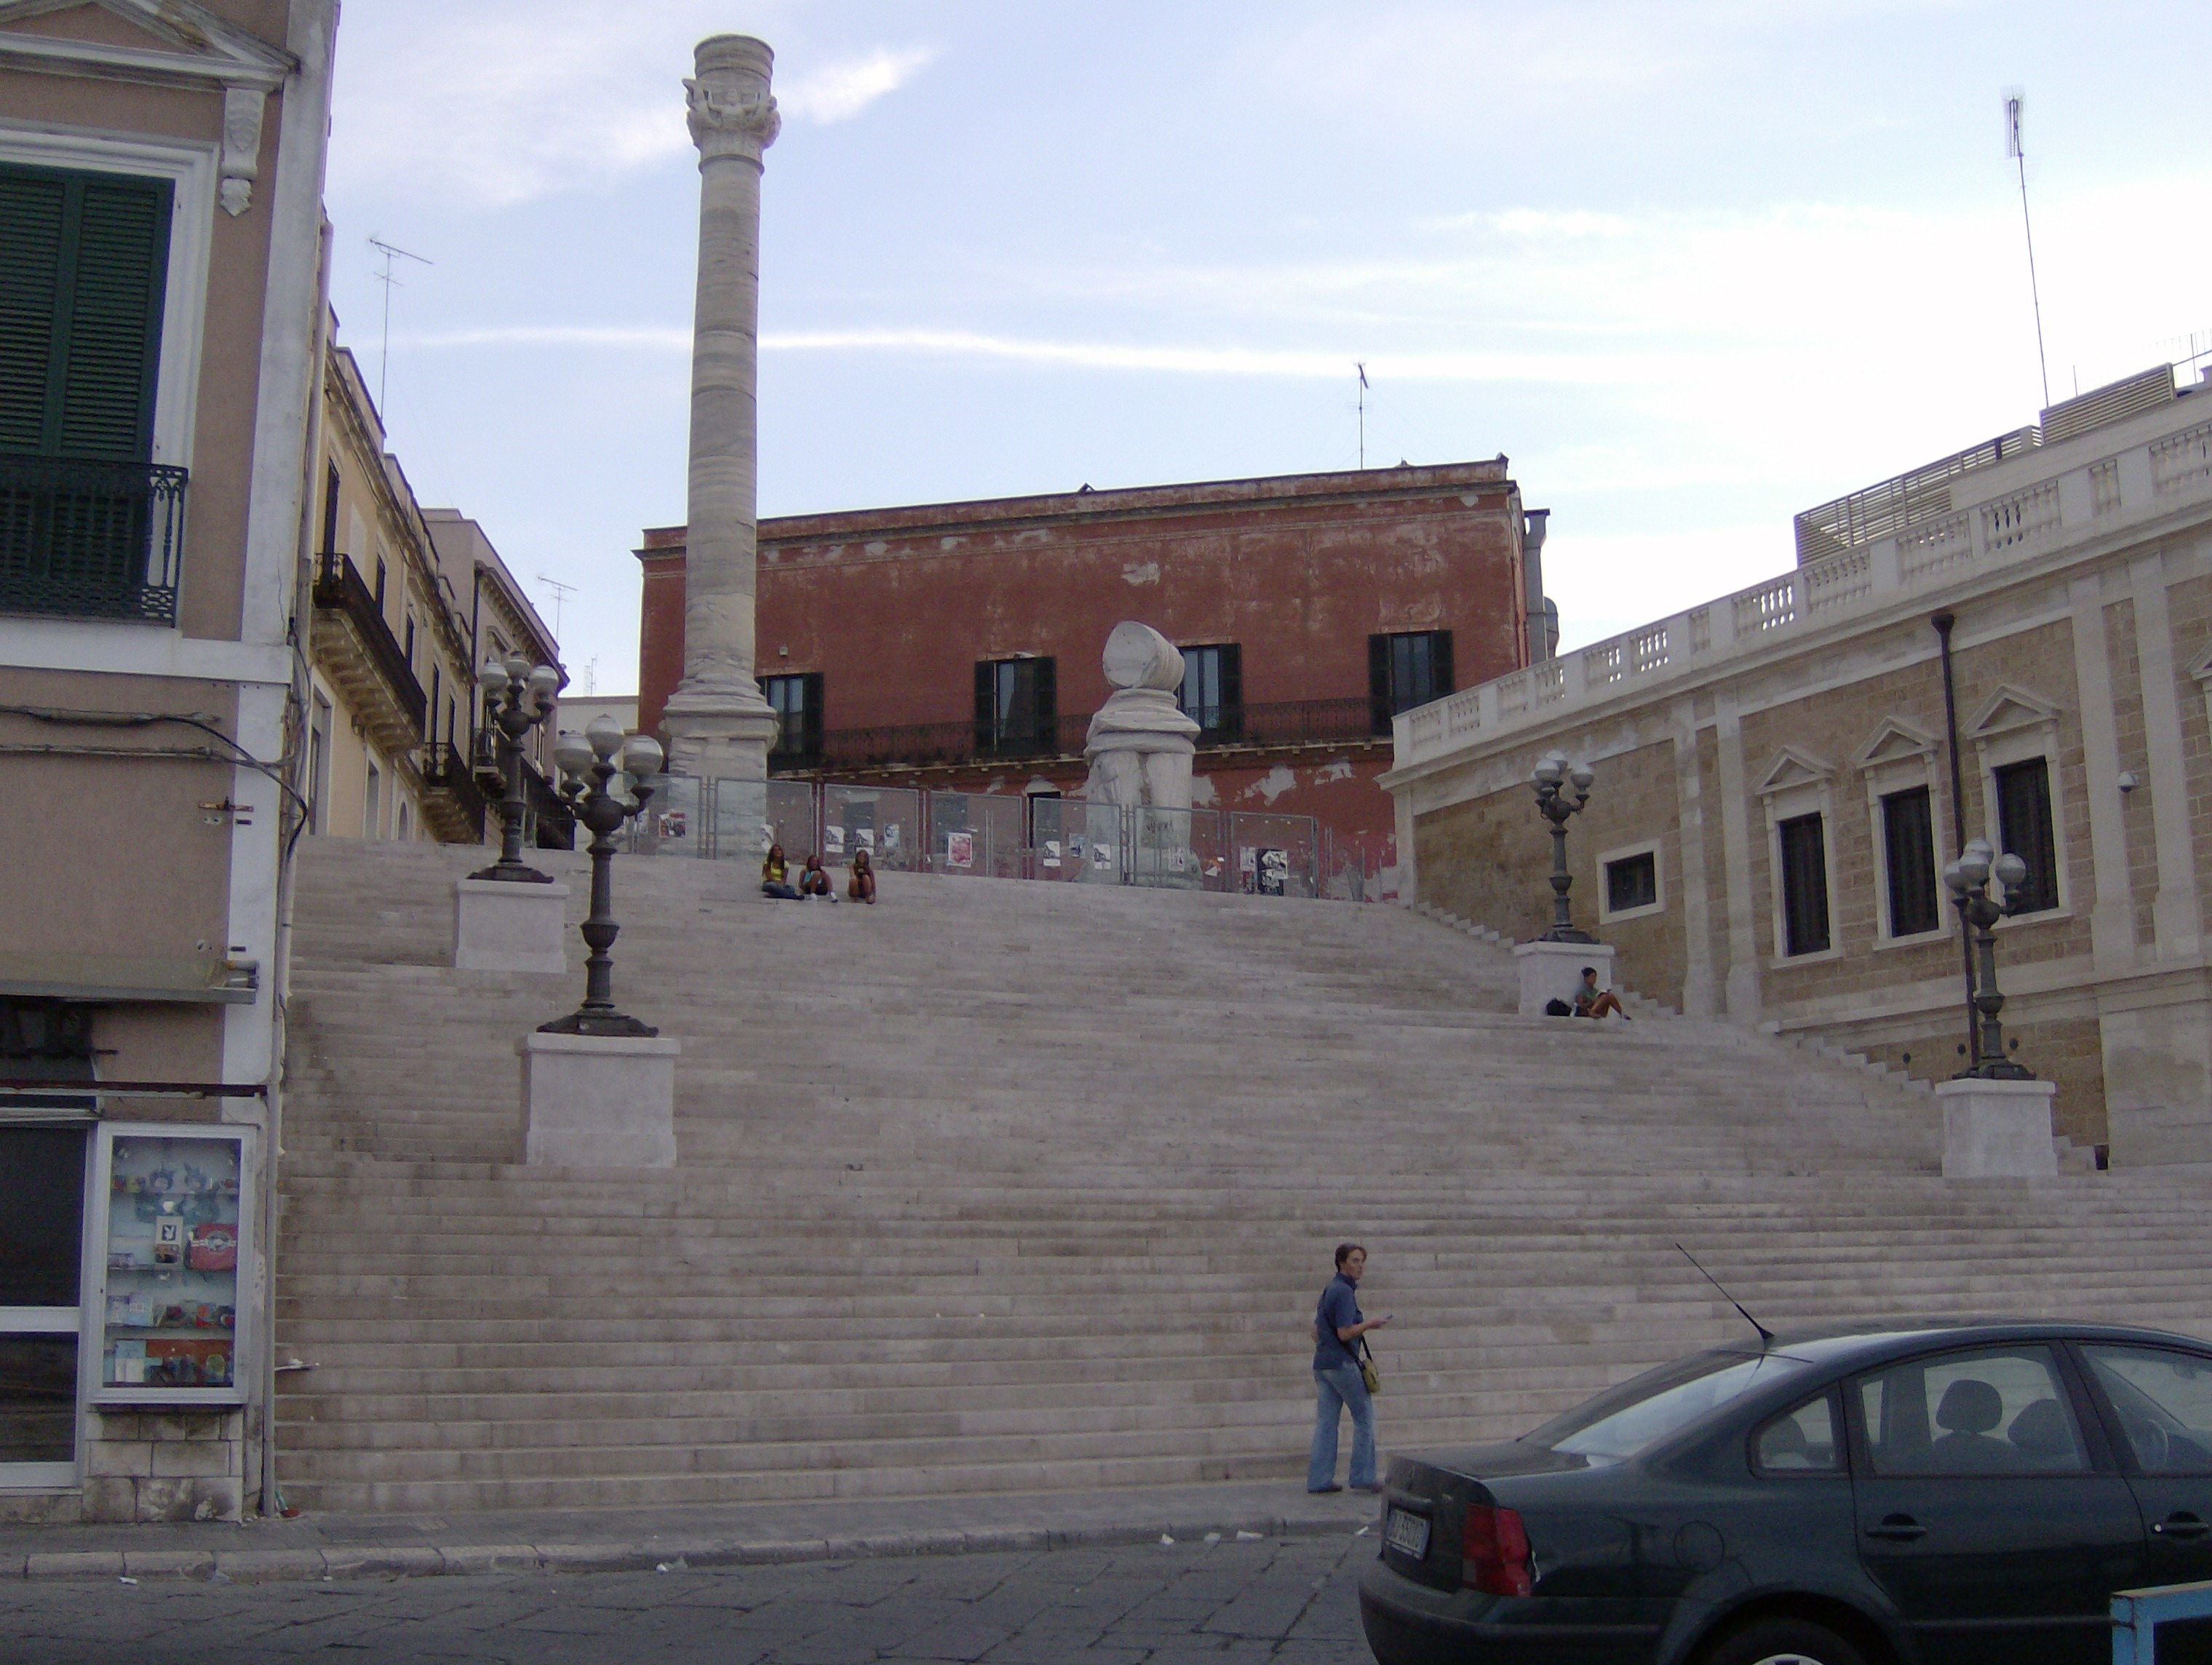 Zappuddu, Le colonne poste alla fine della Via Appia a Brindisi,2007, fotografia digitale